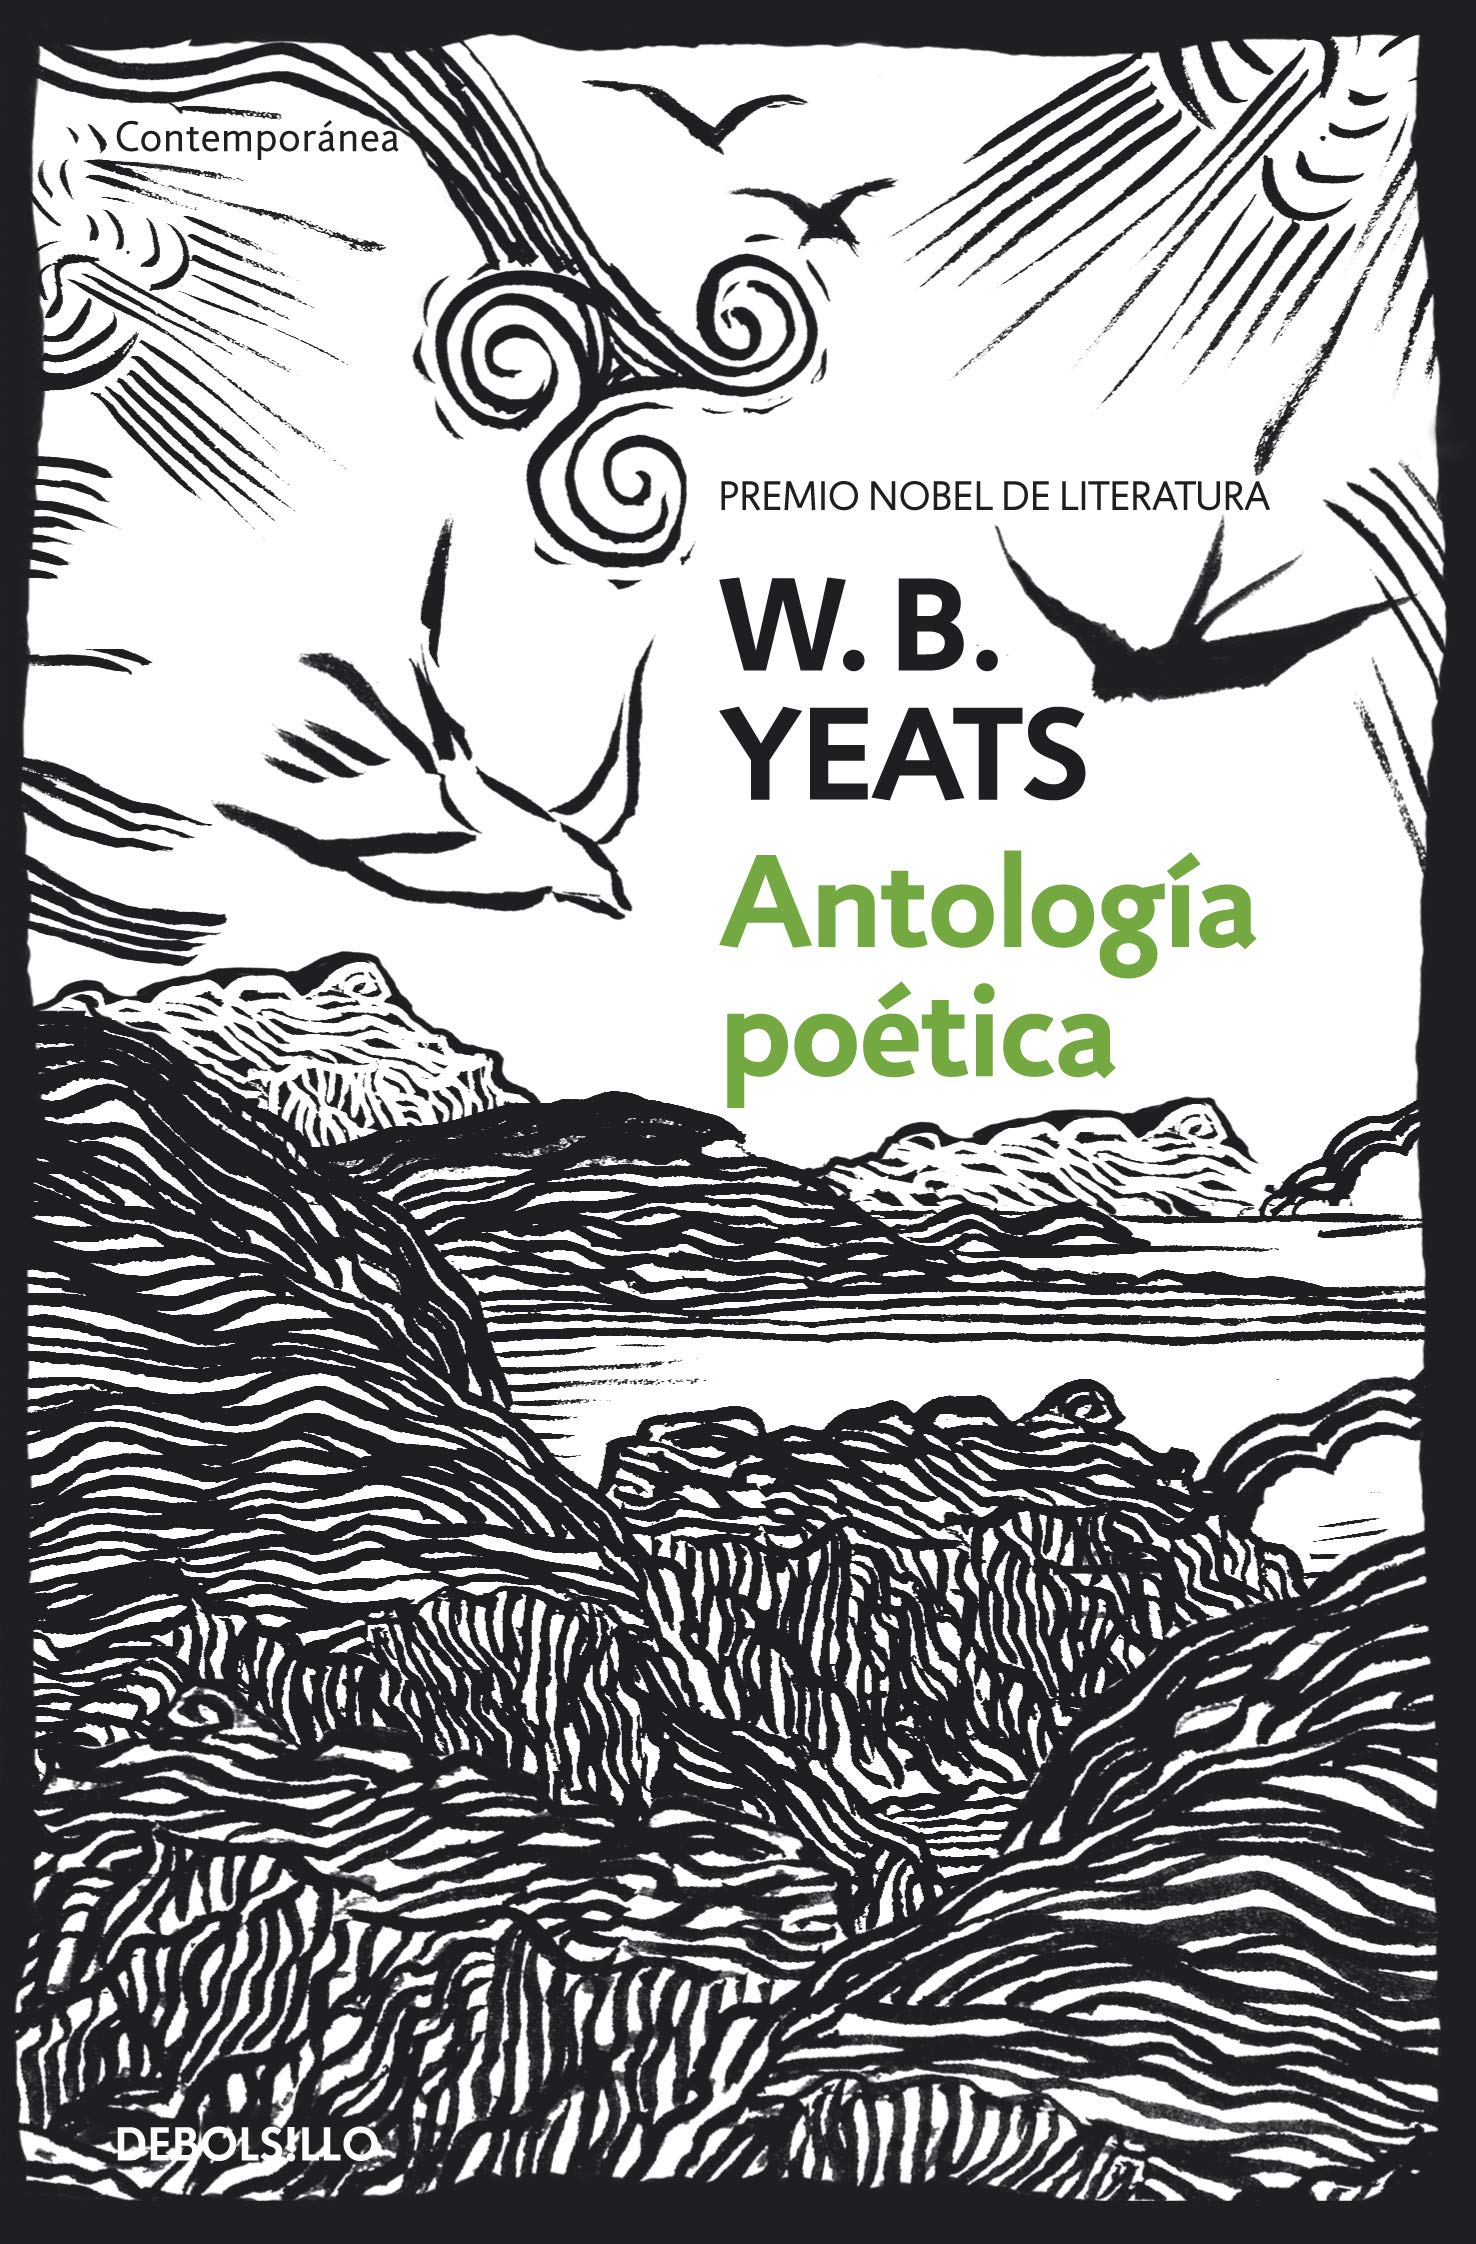 Zenda recomienda: Antología poética, de W. B. Yeats